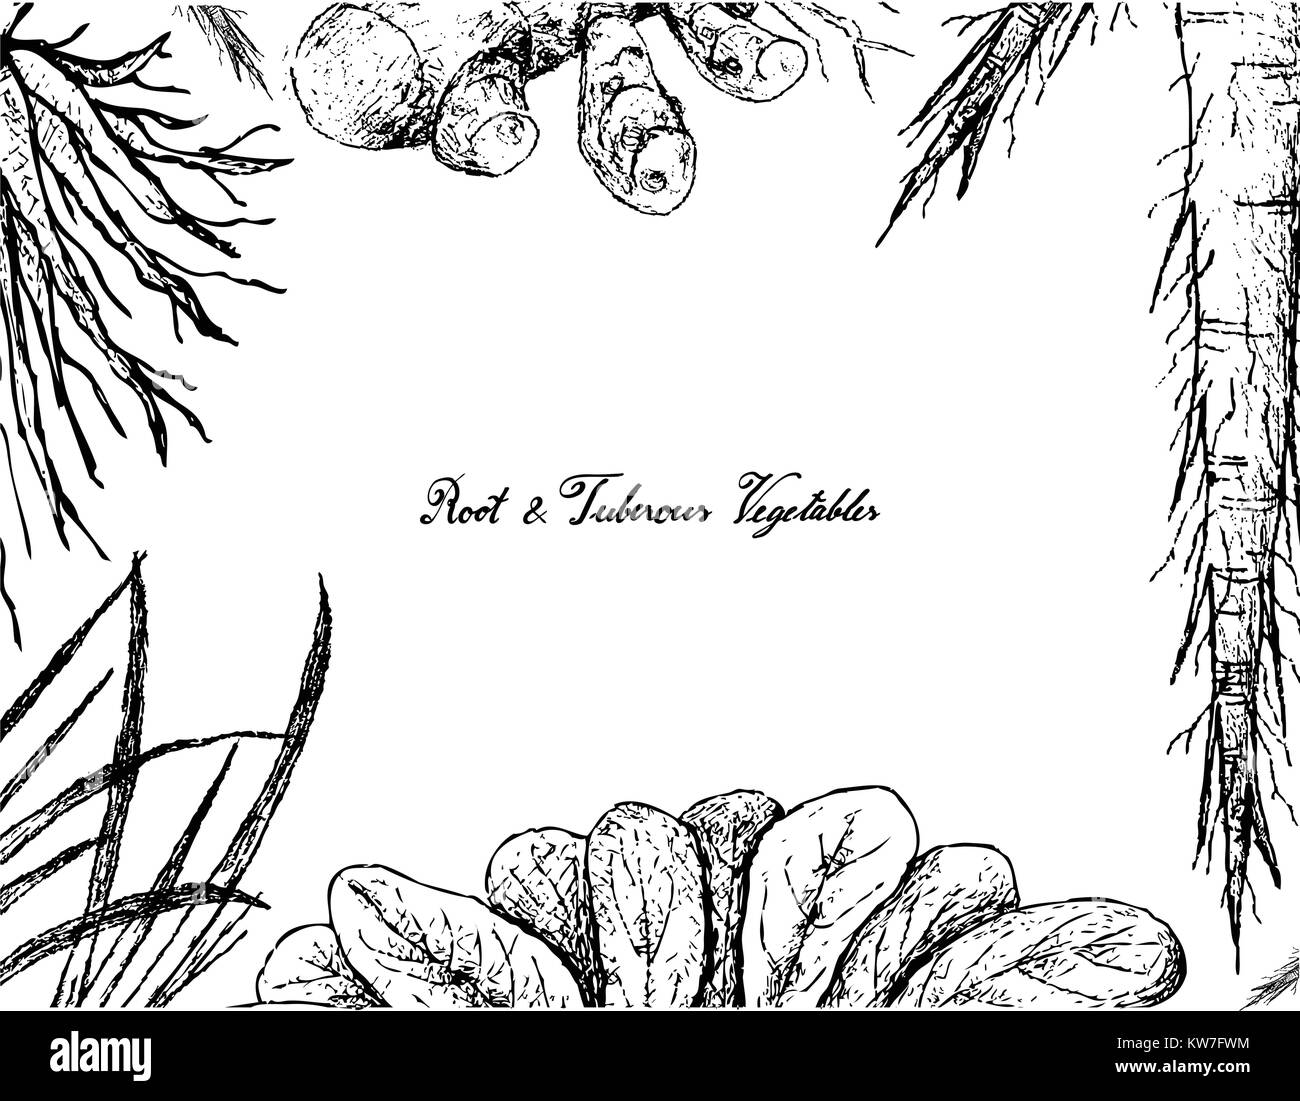 Root und knötchenförmige Gemüse, Illustration von Hand gezeichnete Skizze der Gelbwurz, Skirret, Schwarzwurzeln Pflanzen auf weißem Hintergrund. Stock Vektor